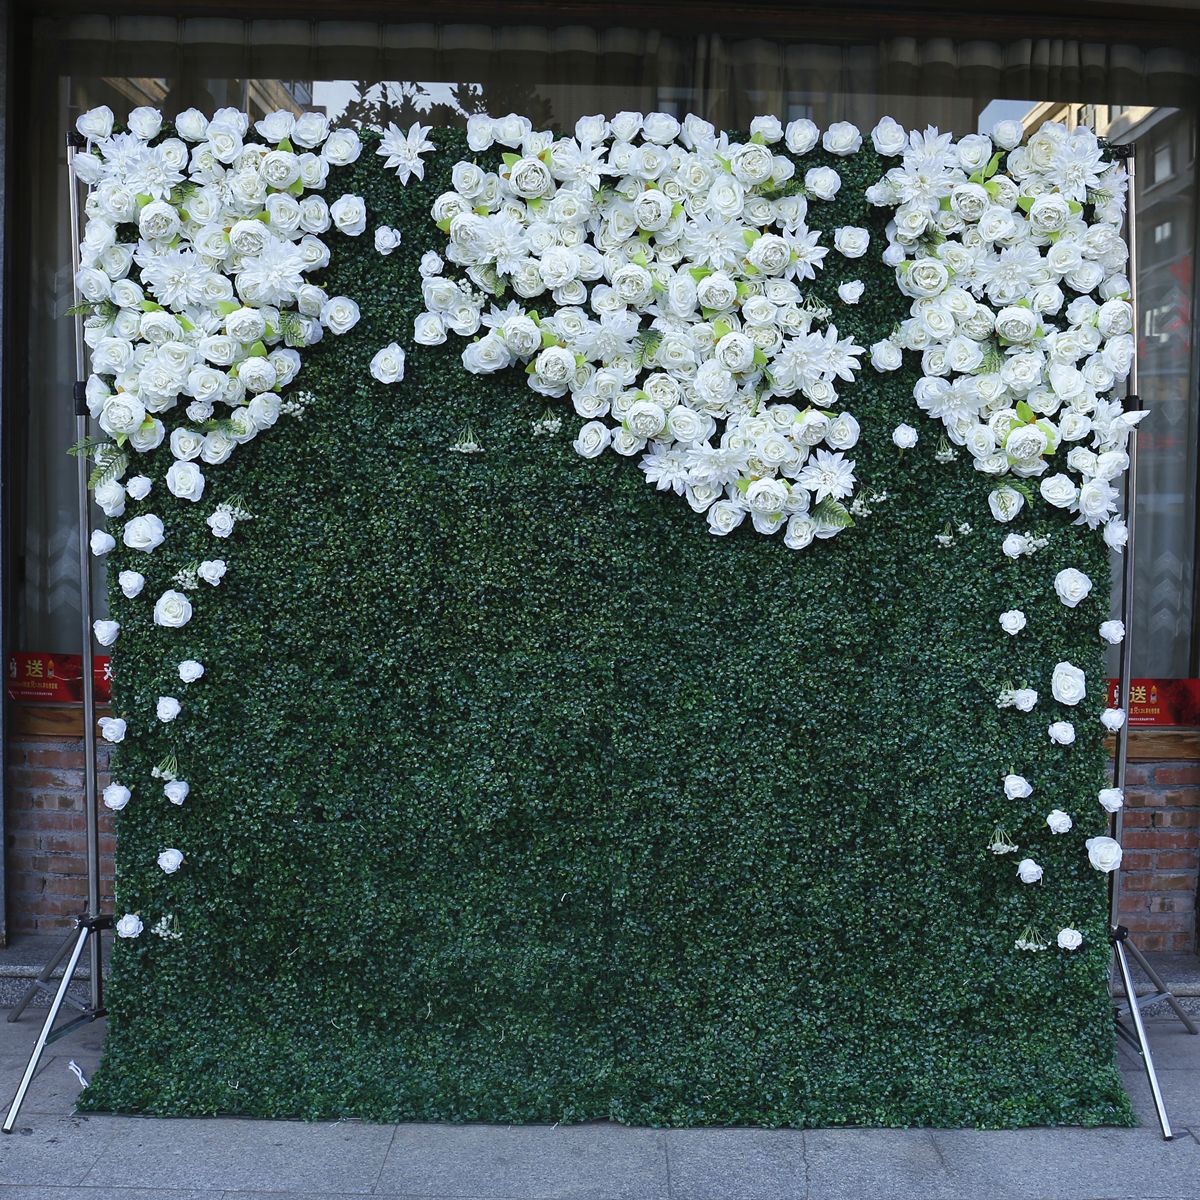 仿真植物墙绿植背景墙 亚马逊热卖婚庆装饰婚礼布置白色布底花墙